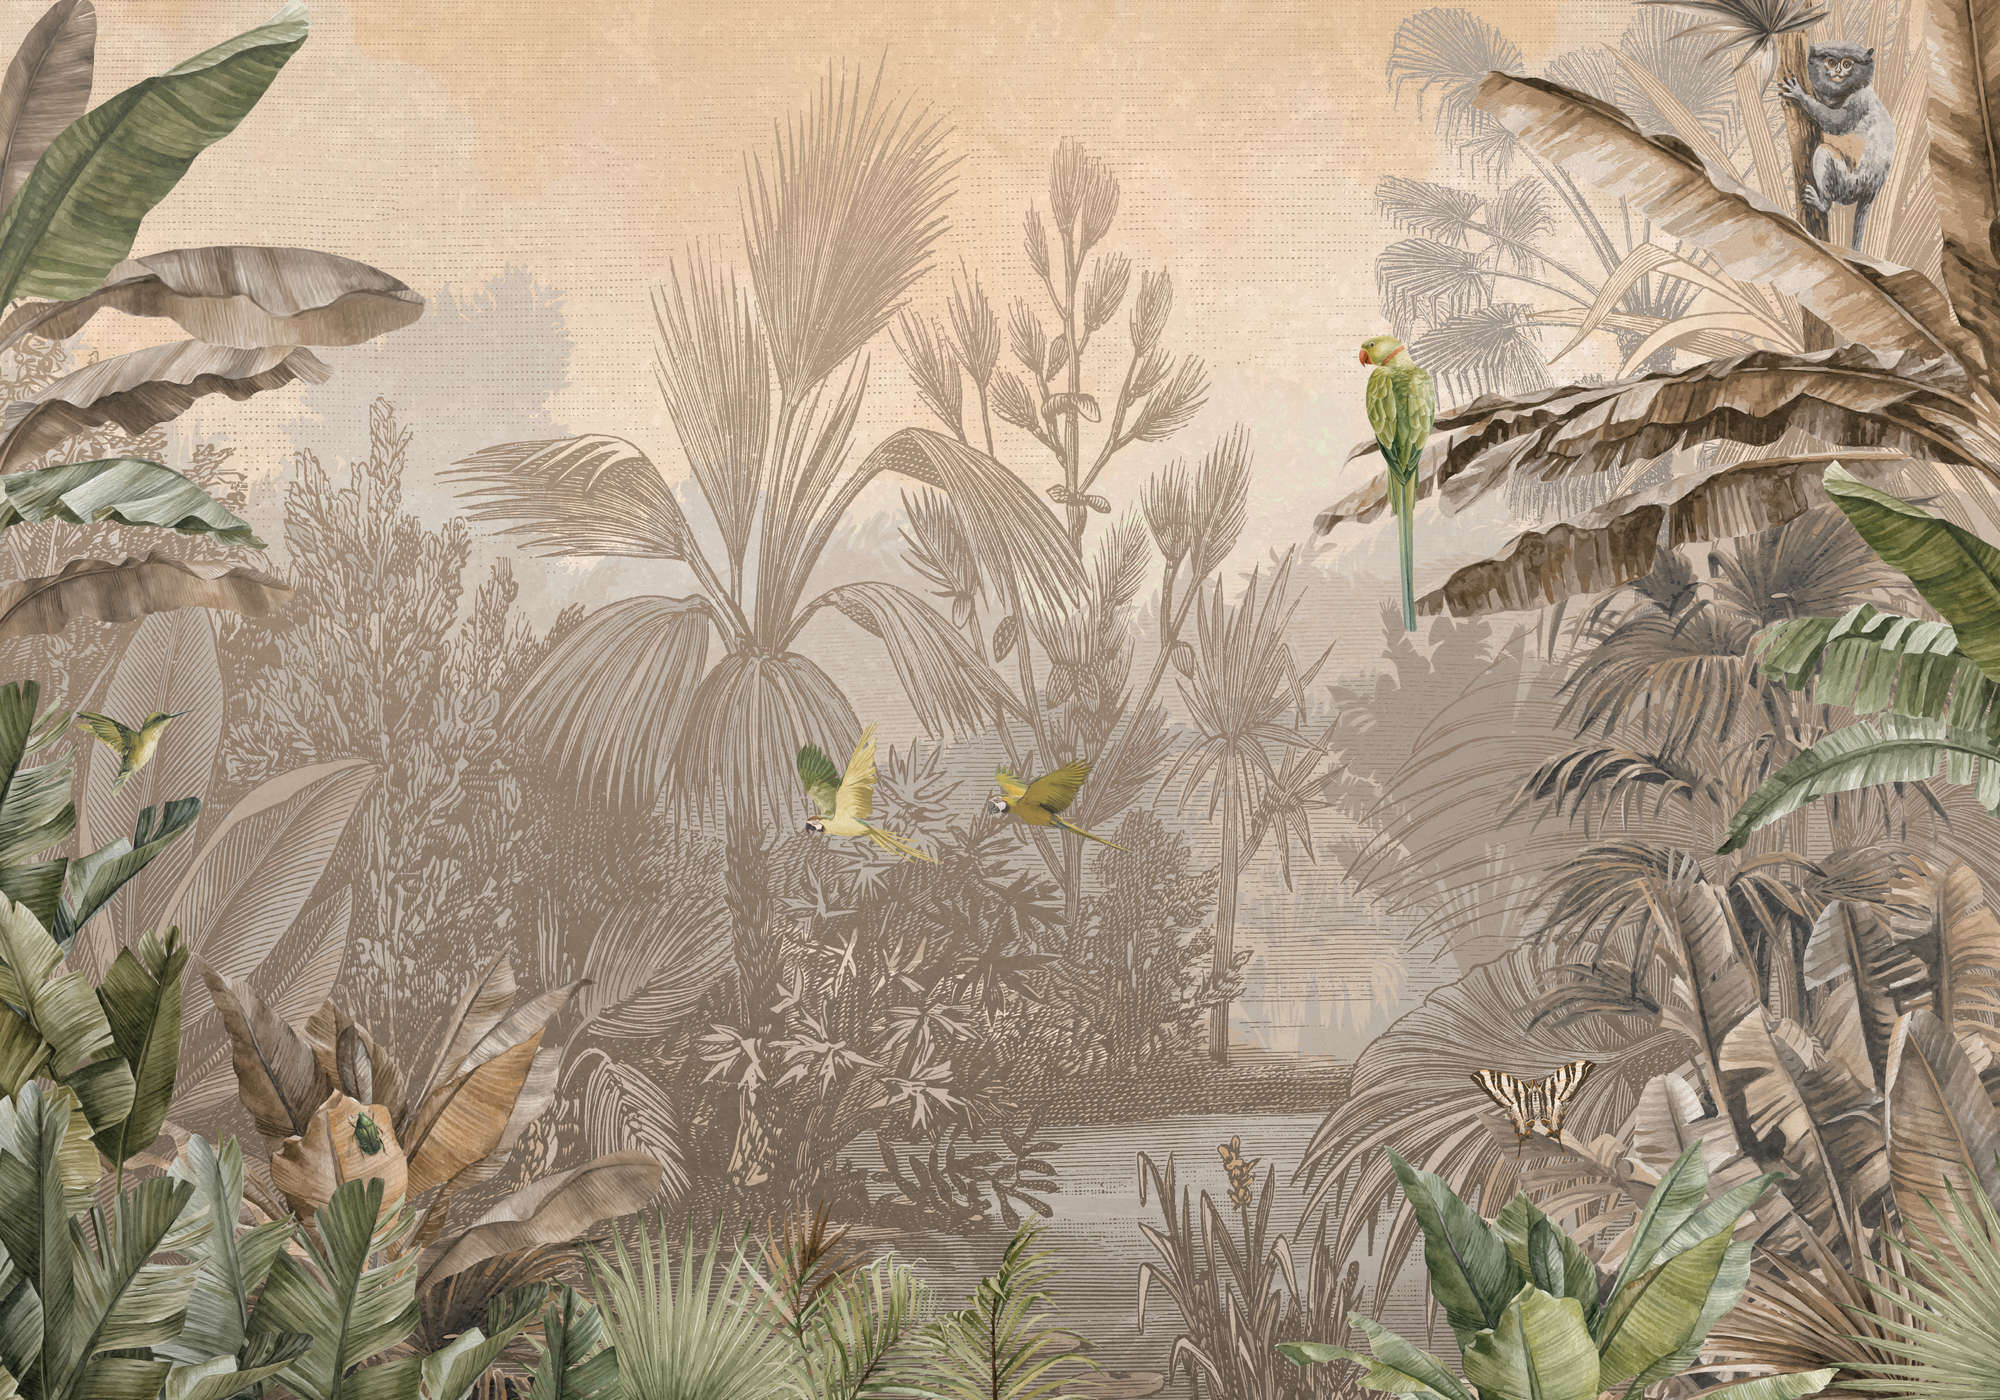             Papier peint panoramique jungle marron-vert style dessin
        